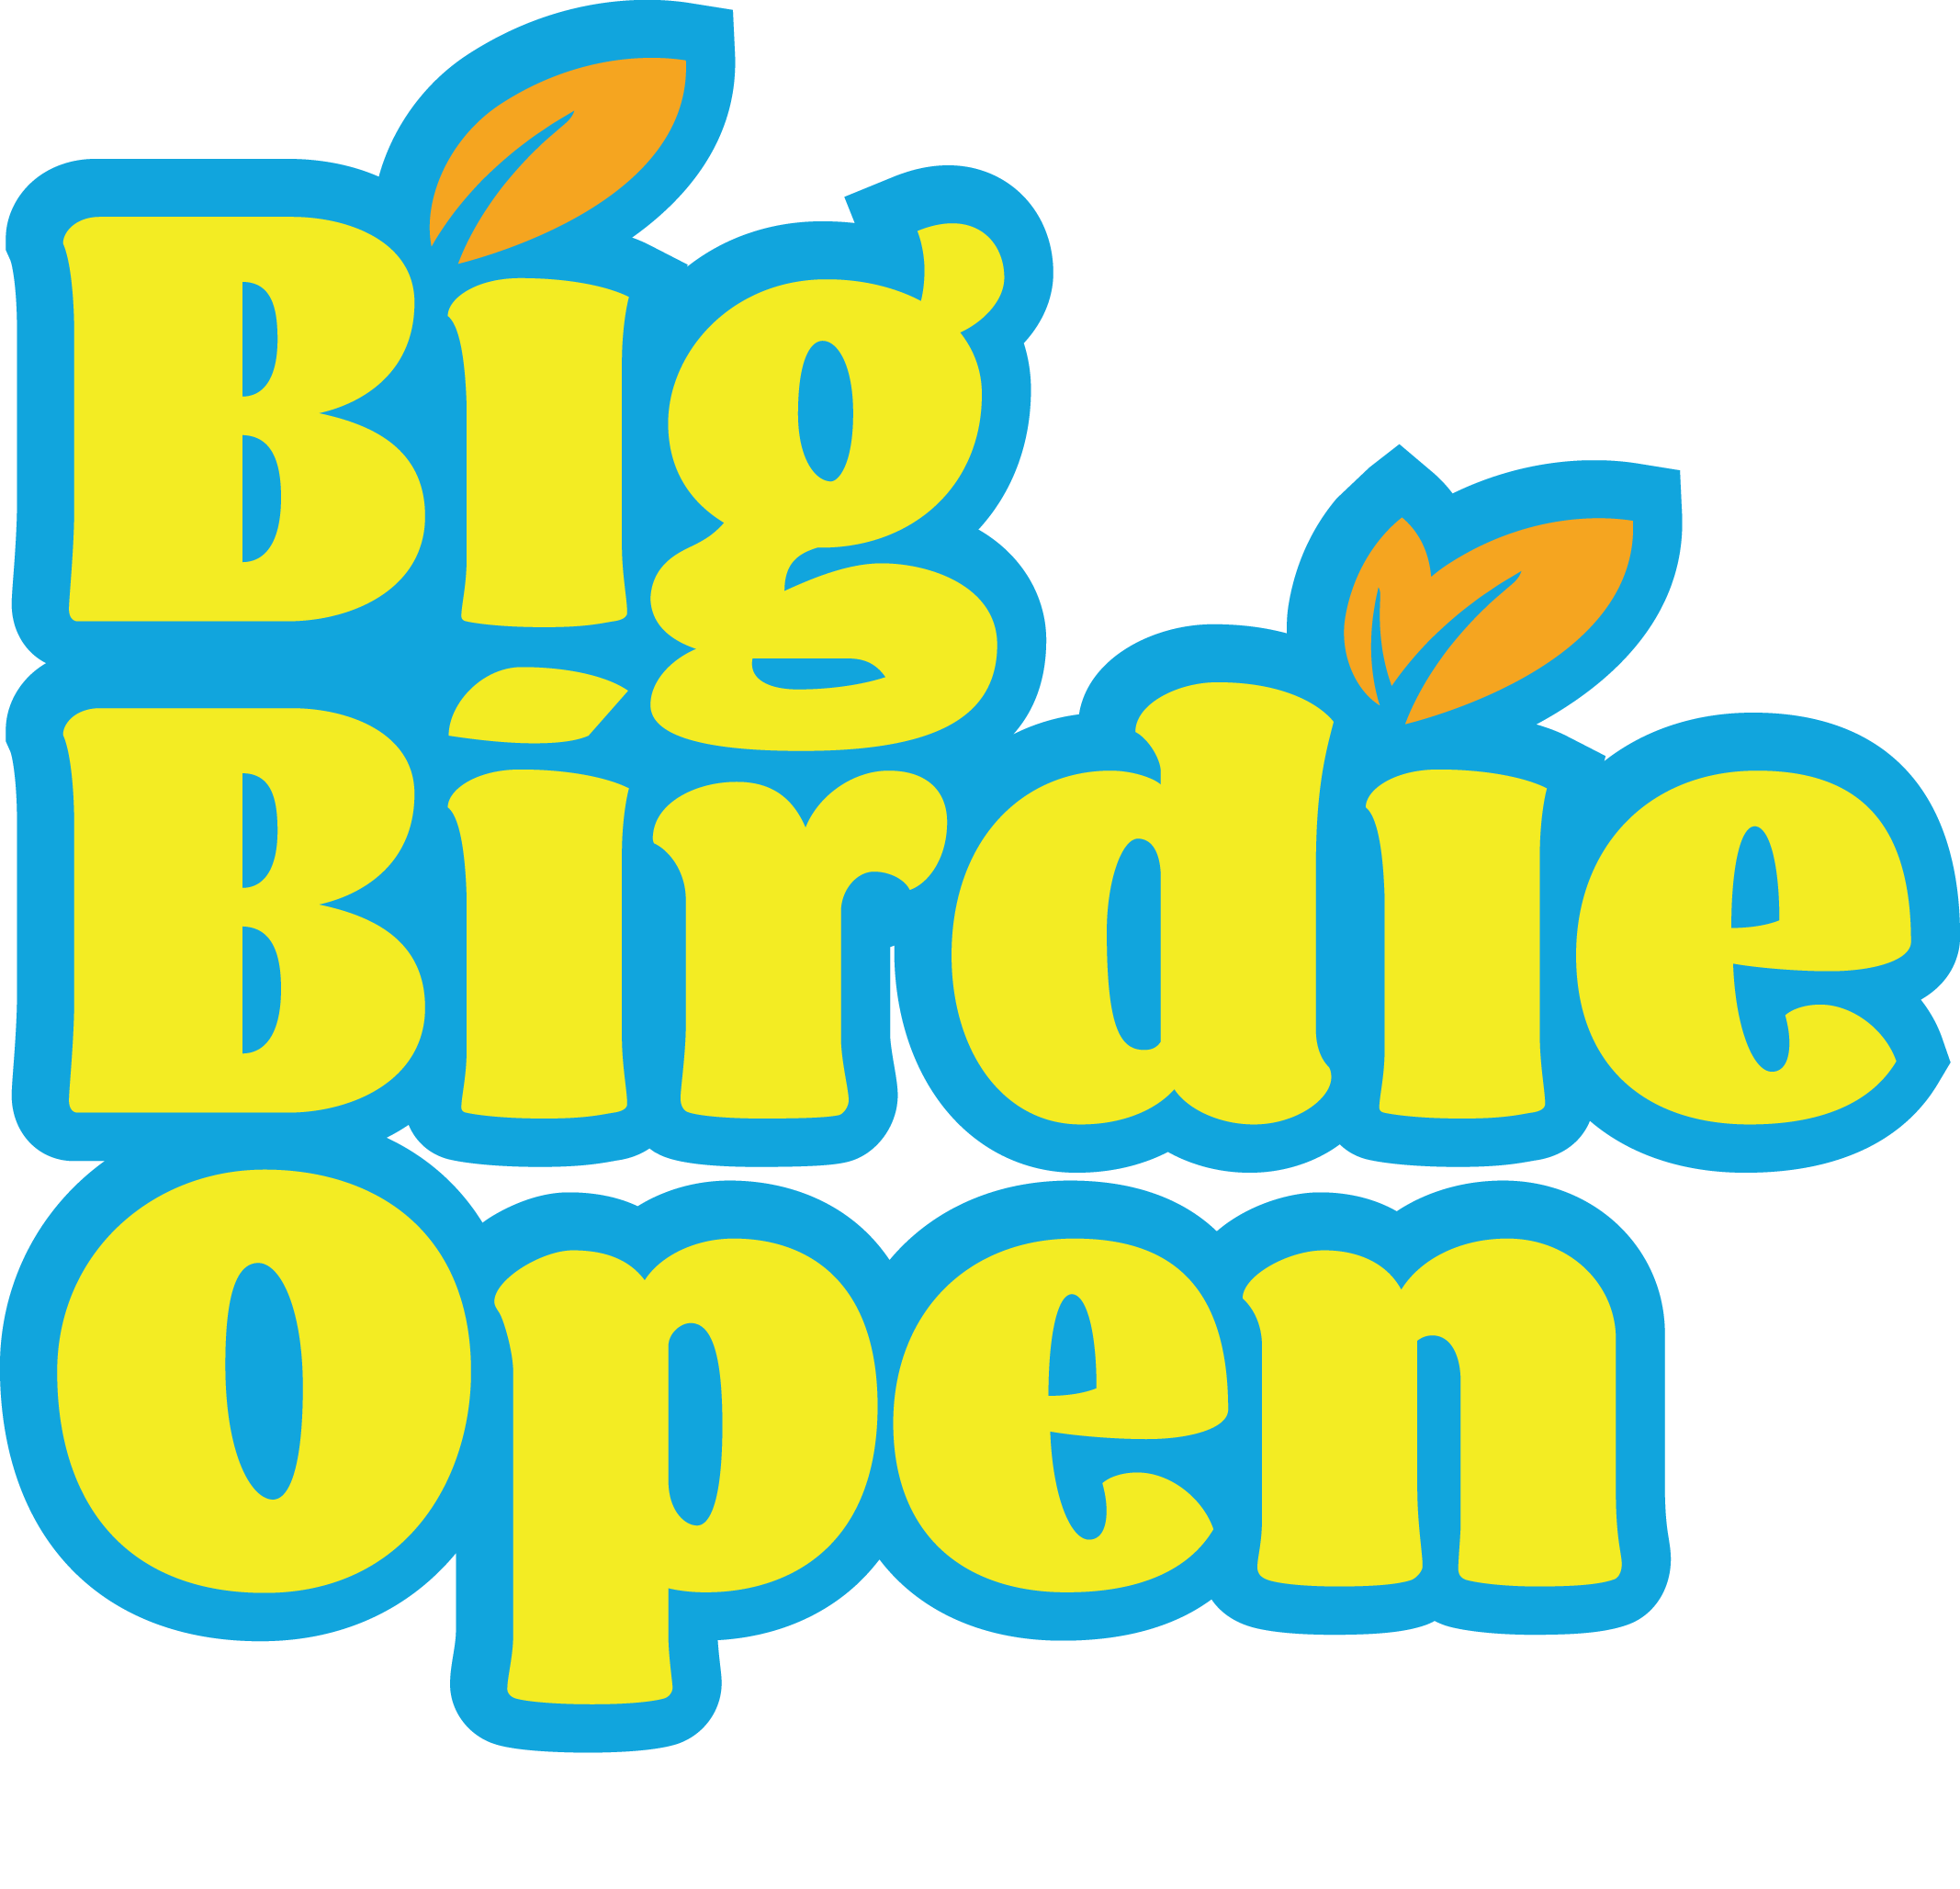 Big Birdie Open logo